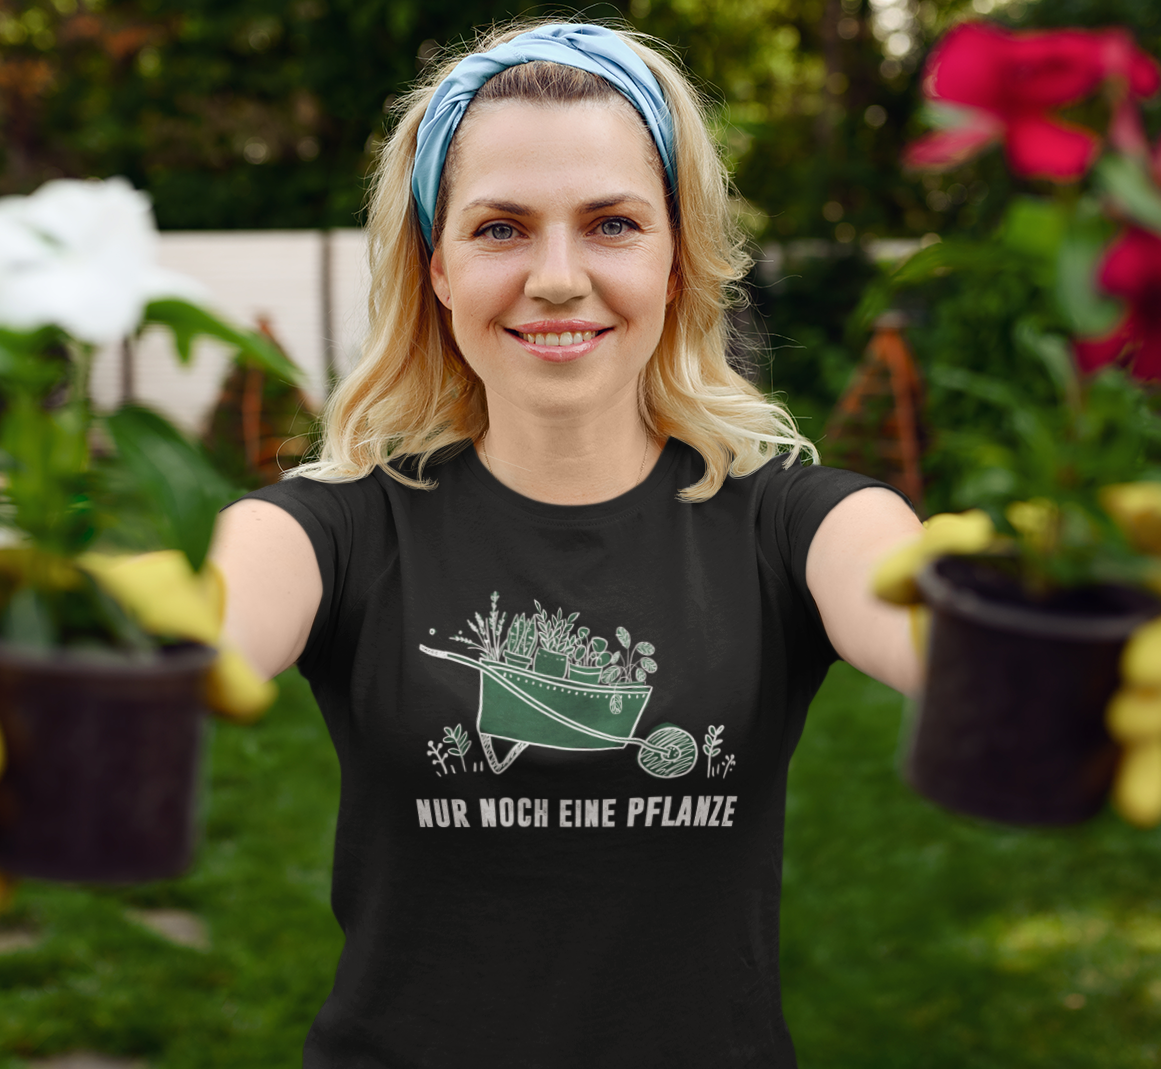 Nur noch eine Pflanze - Unisex Shirt